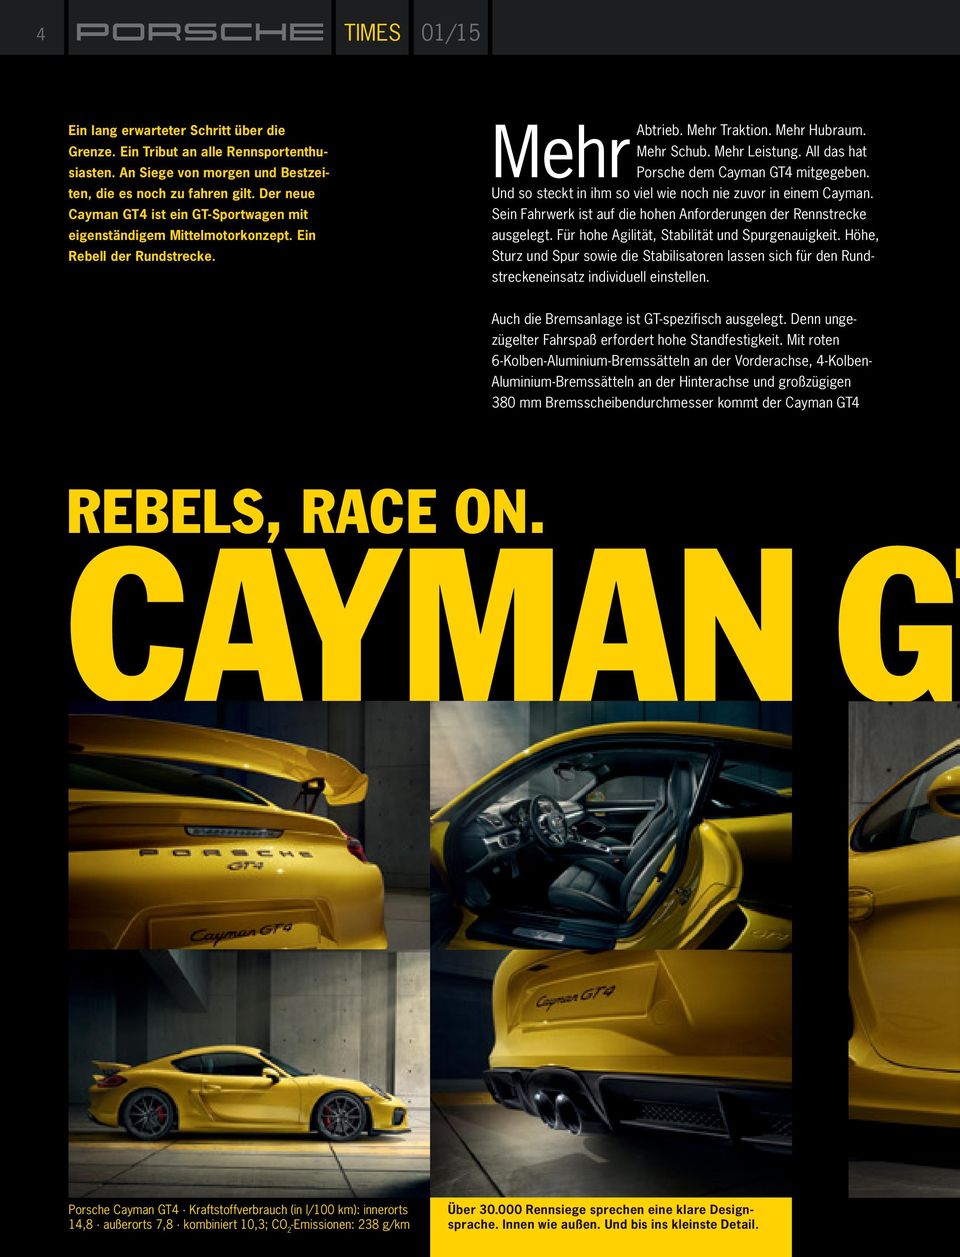 All das hat Porsche dem Cayman GT4 mitgegeben. Und so steckt in ihm so viel wie noch nie zuvor in einem Cayman. Sein Fahrwerk ist auf die hohen Anforderungen der Rennstrecke ausgelegt.